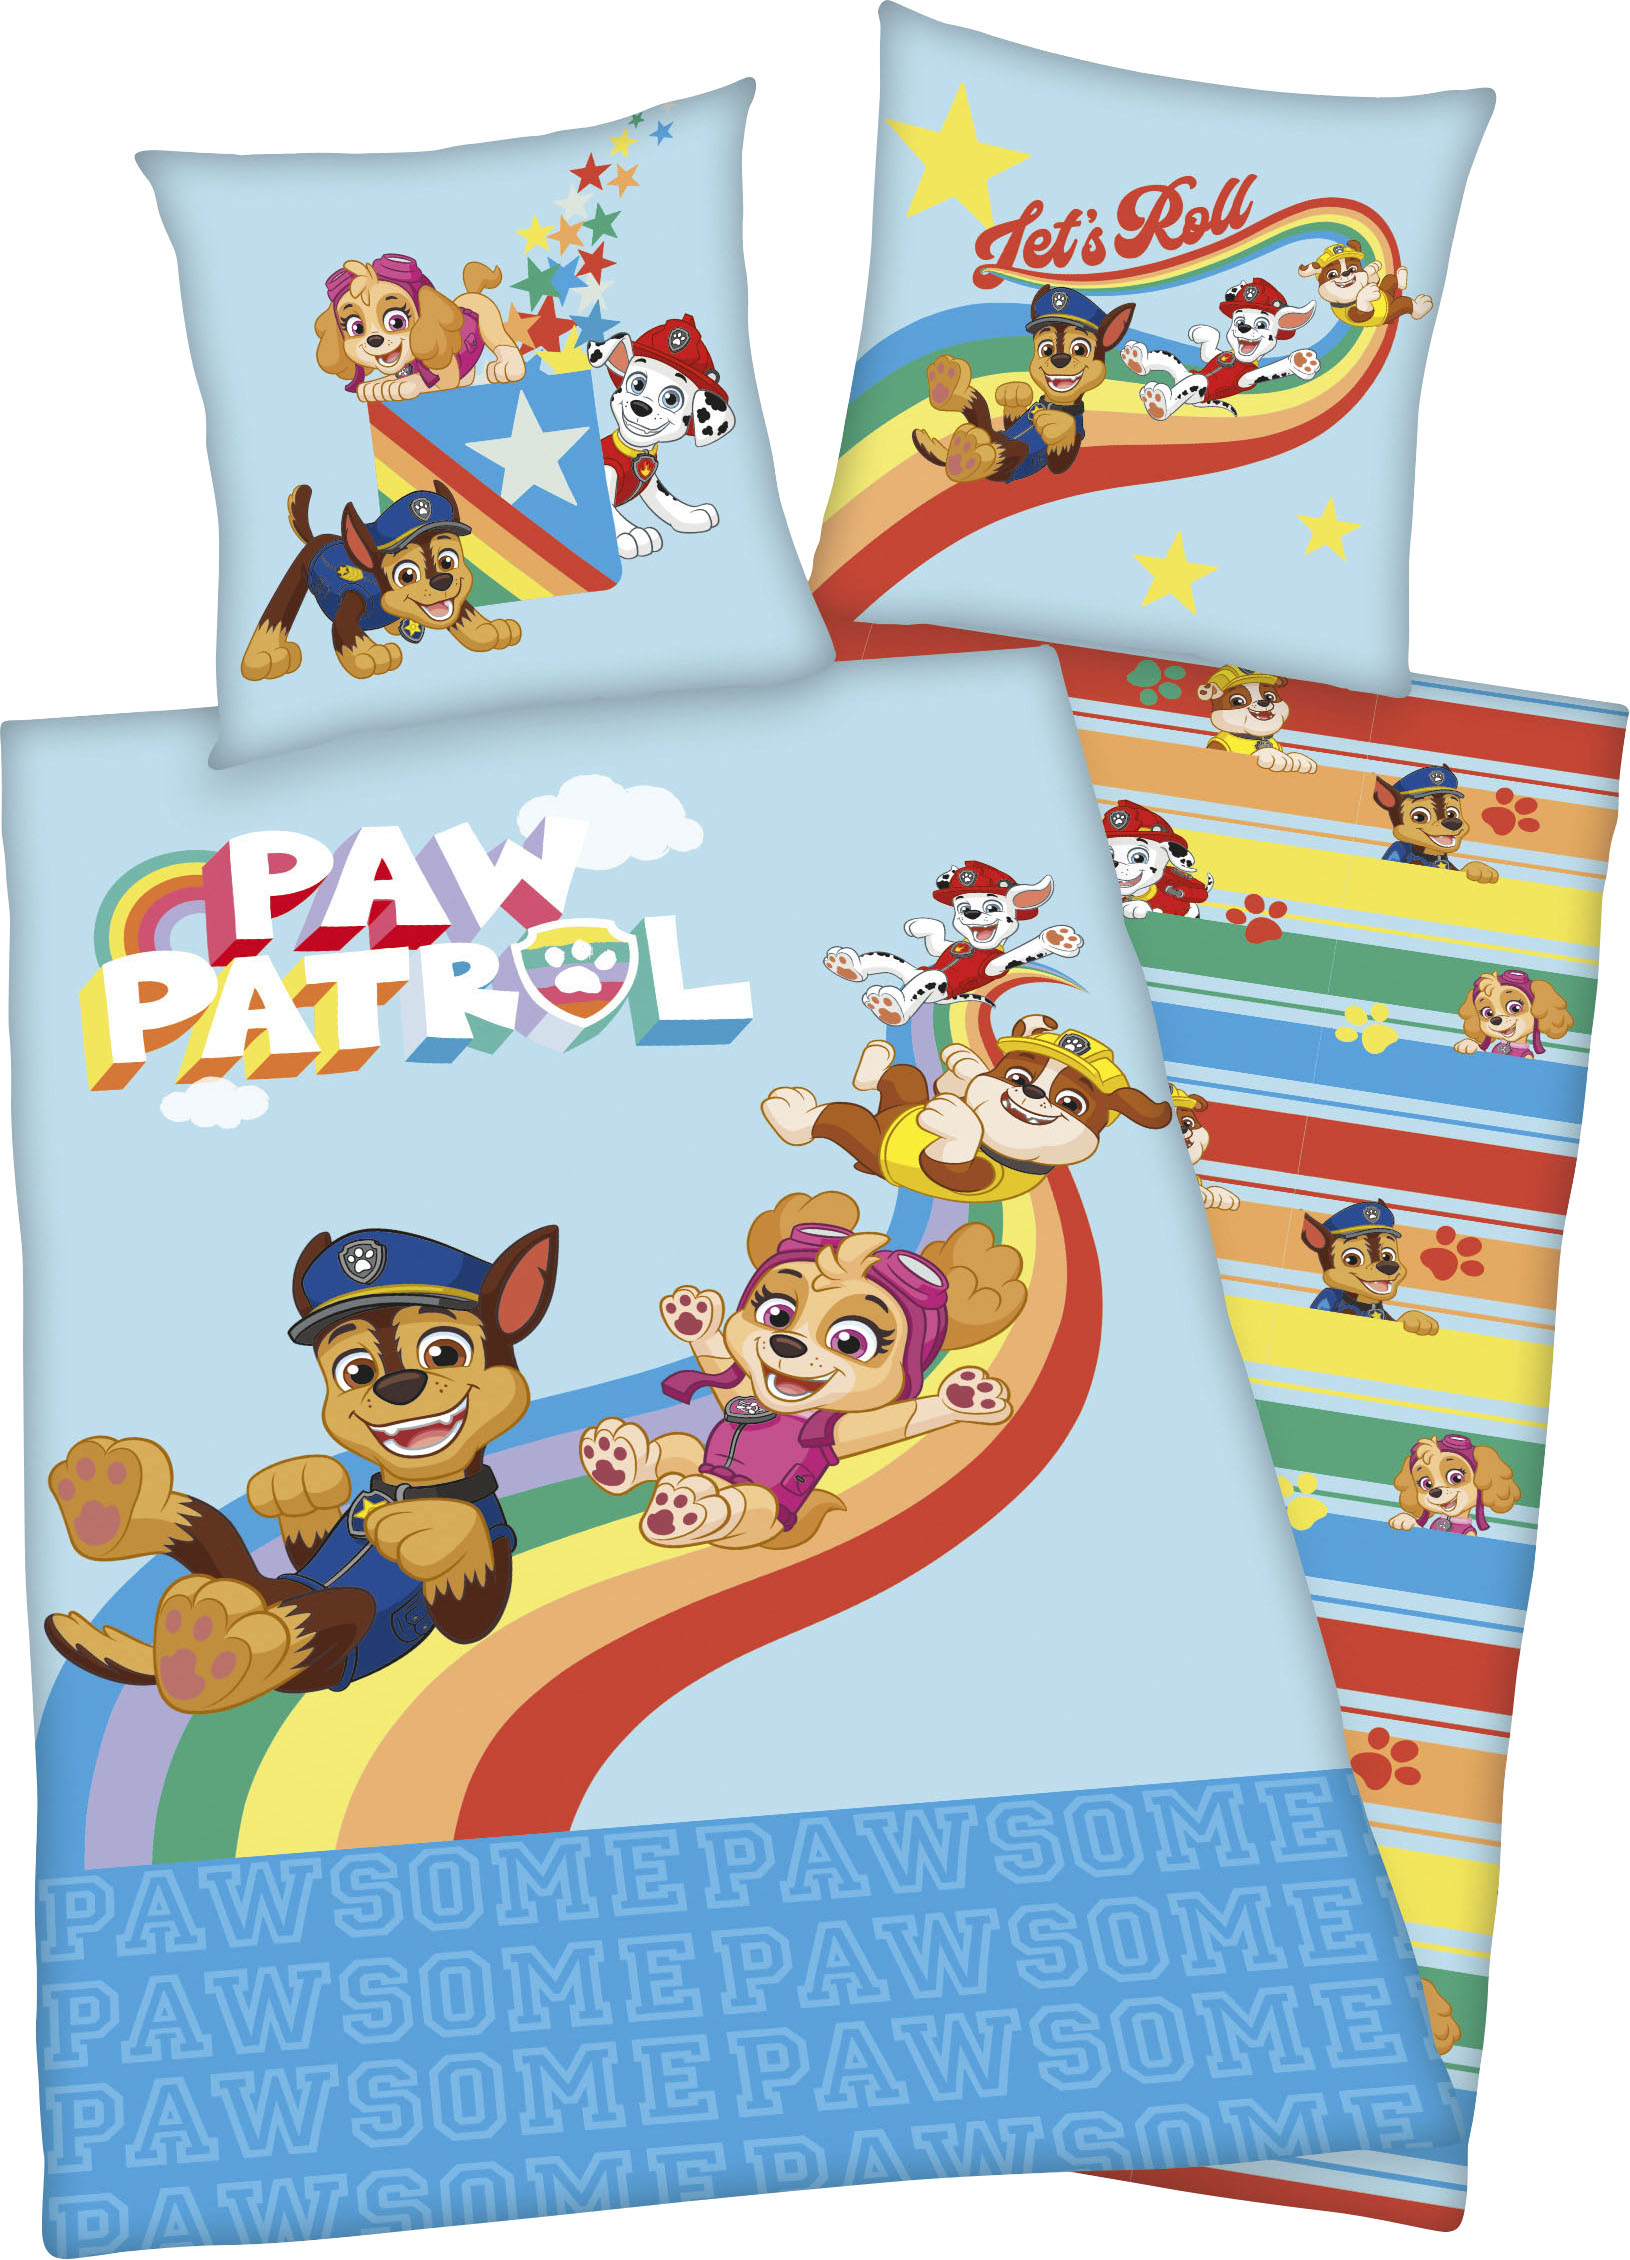 PAW PATROL Kinderbettwäsche "Lets Roll", mit tollem Paw Patrol Motiv von Paw Patrol